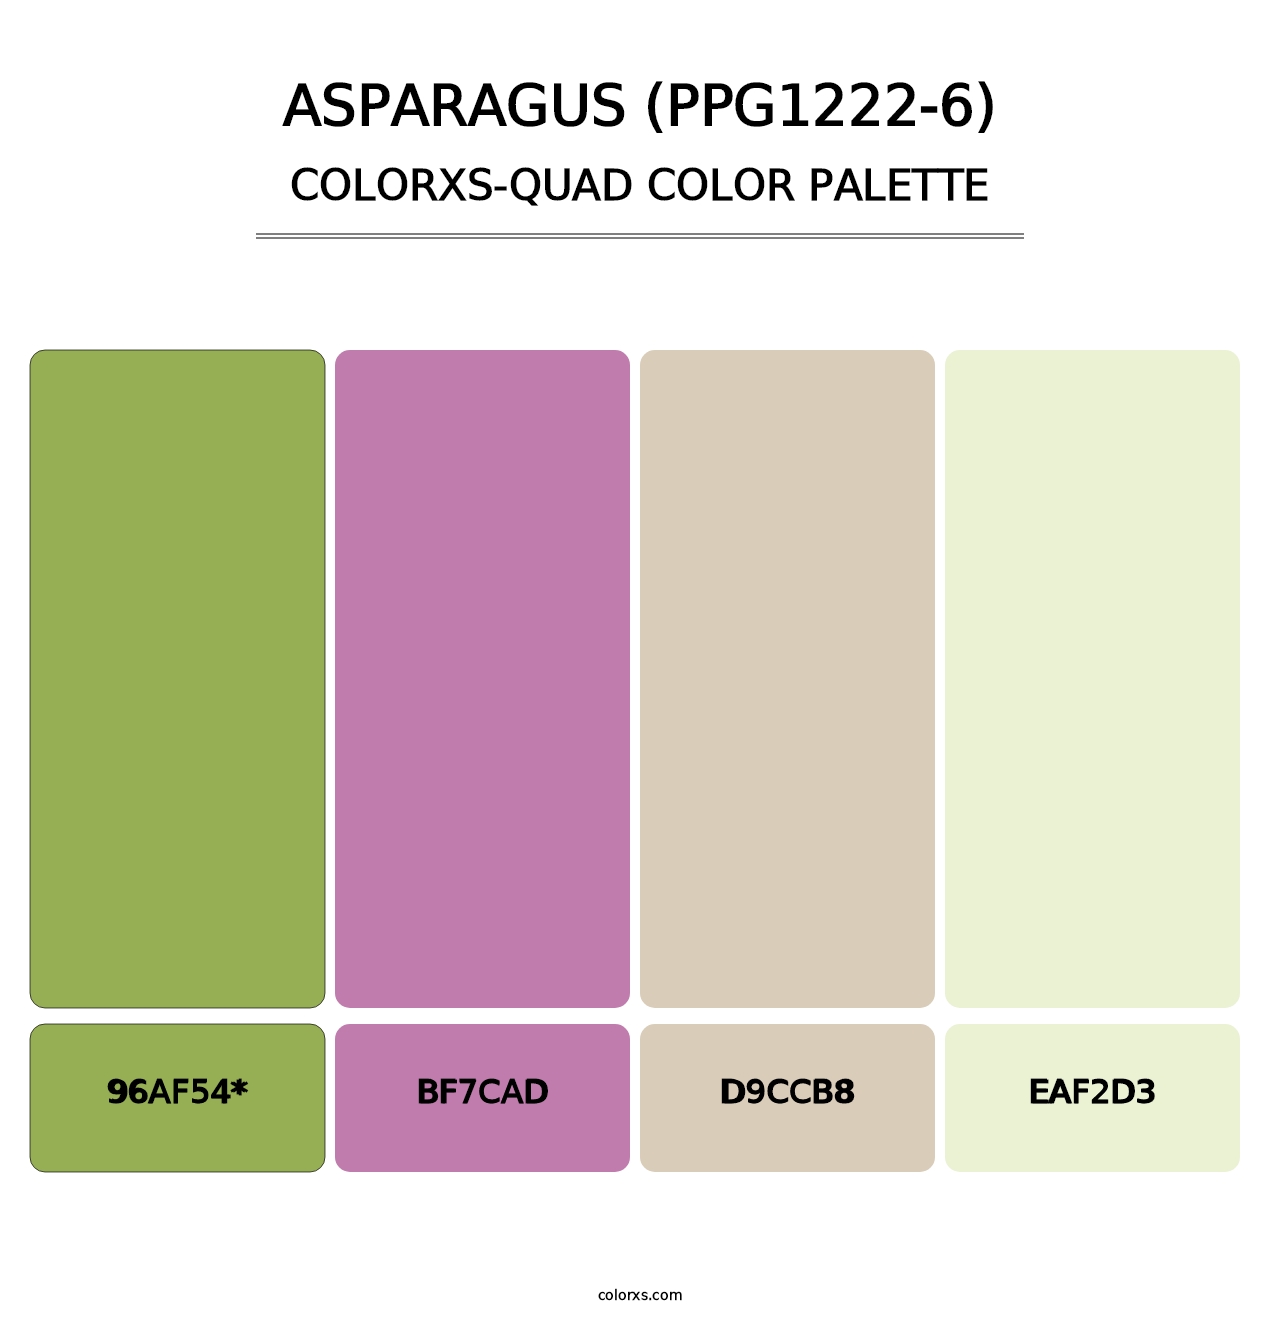 Asparagus (PPG1222-6) - Colorxs Quad Palette